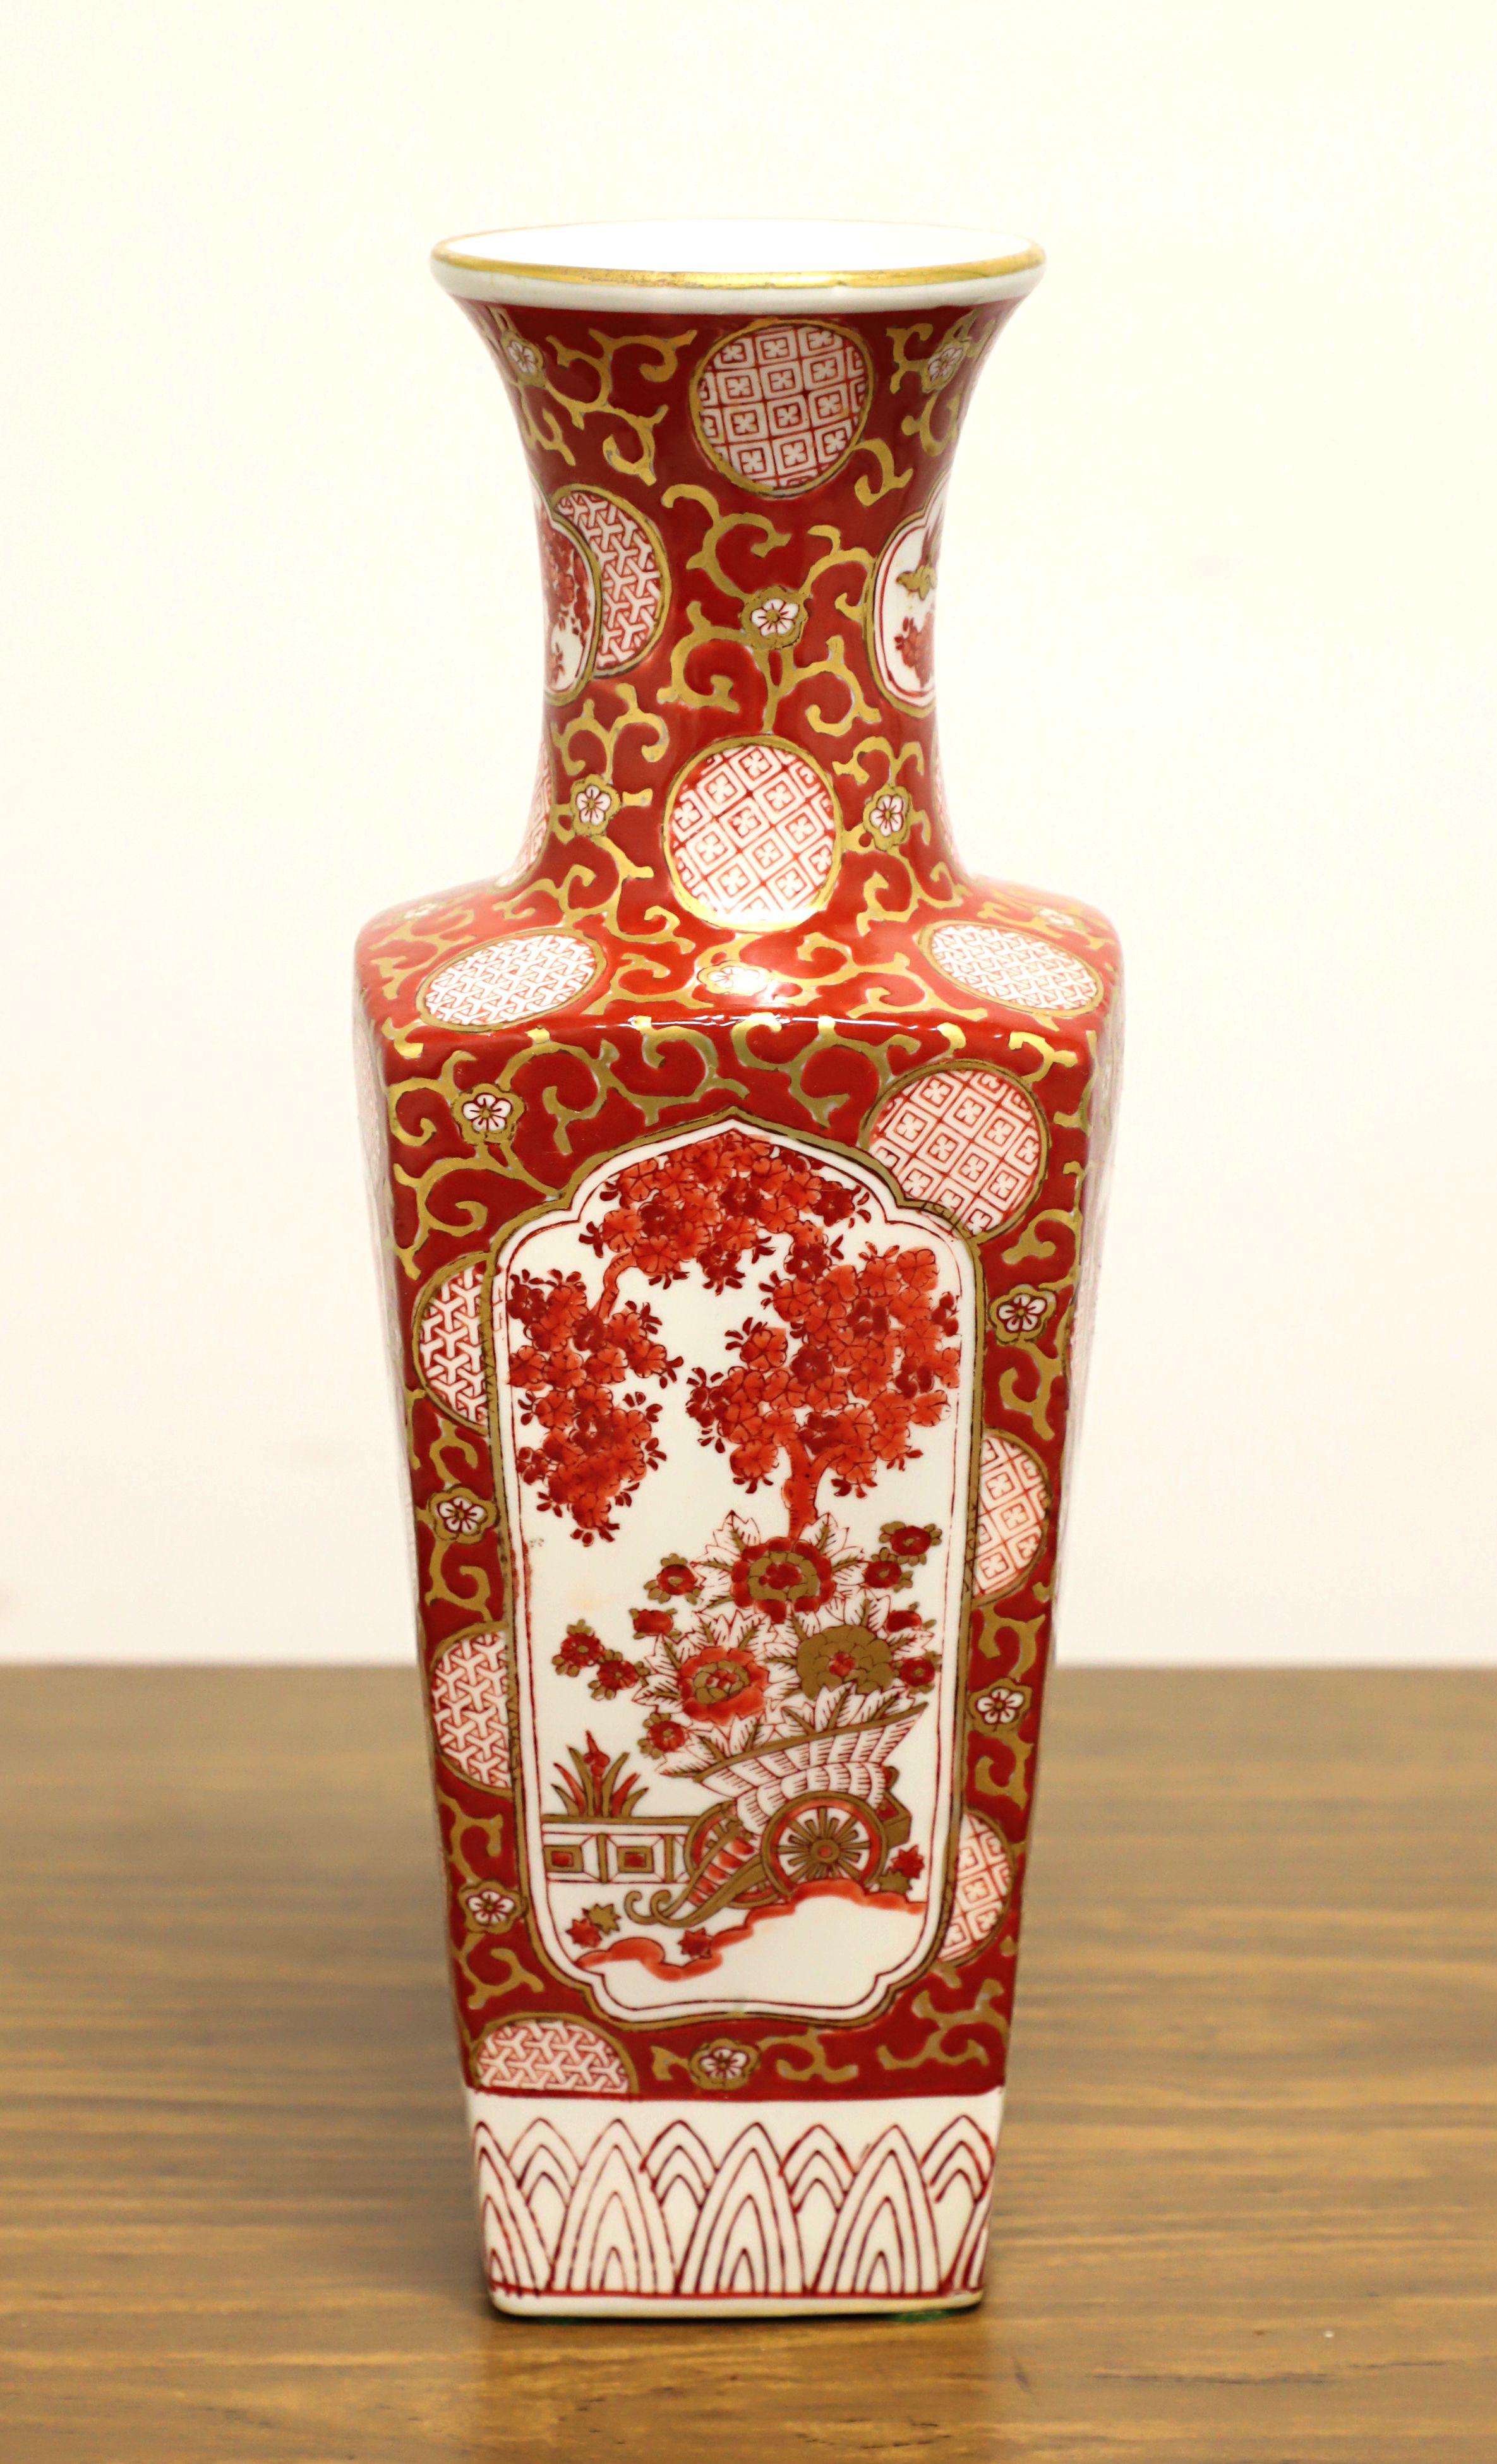 Un vase de table de style chinoiserie asiatique, sans marque. Porcelaine peinte à la main, avec un motif chinois de feuillages, de fleurs et de formes géométriques dans des tons de blanc, de rouge et de saumon, avec une bordure dorée, et une urne